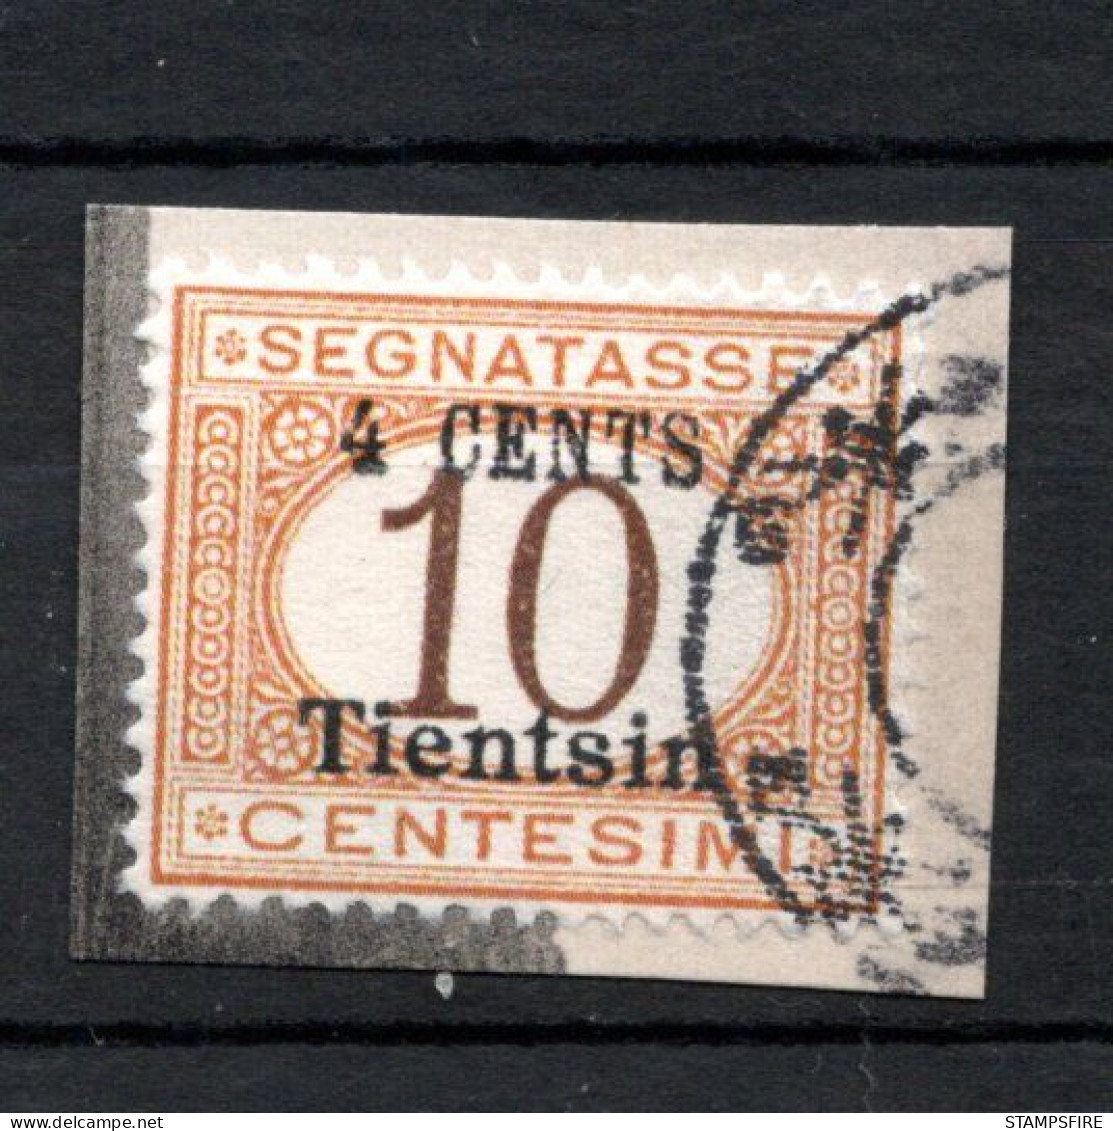 ITALY Colony 1917 TIENTSIN Postage Due 4c USED - Tientsin